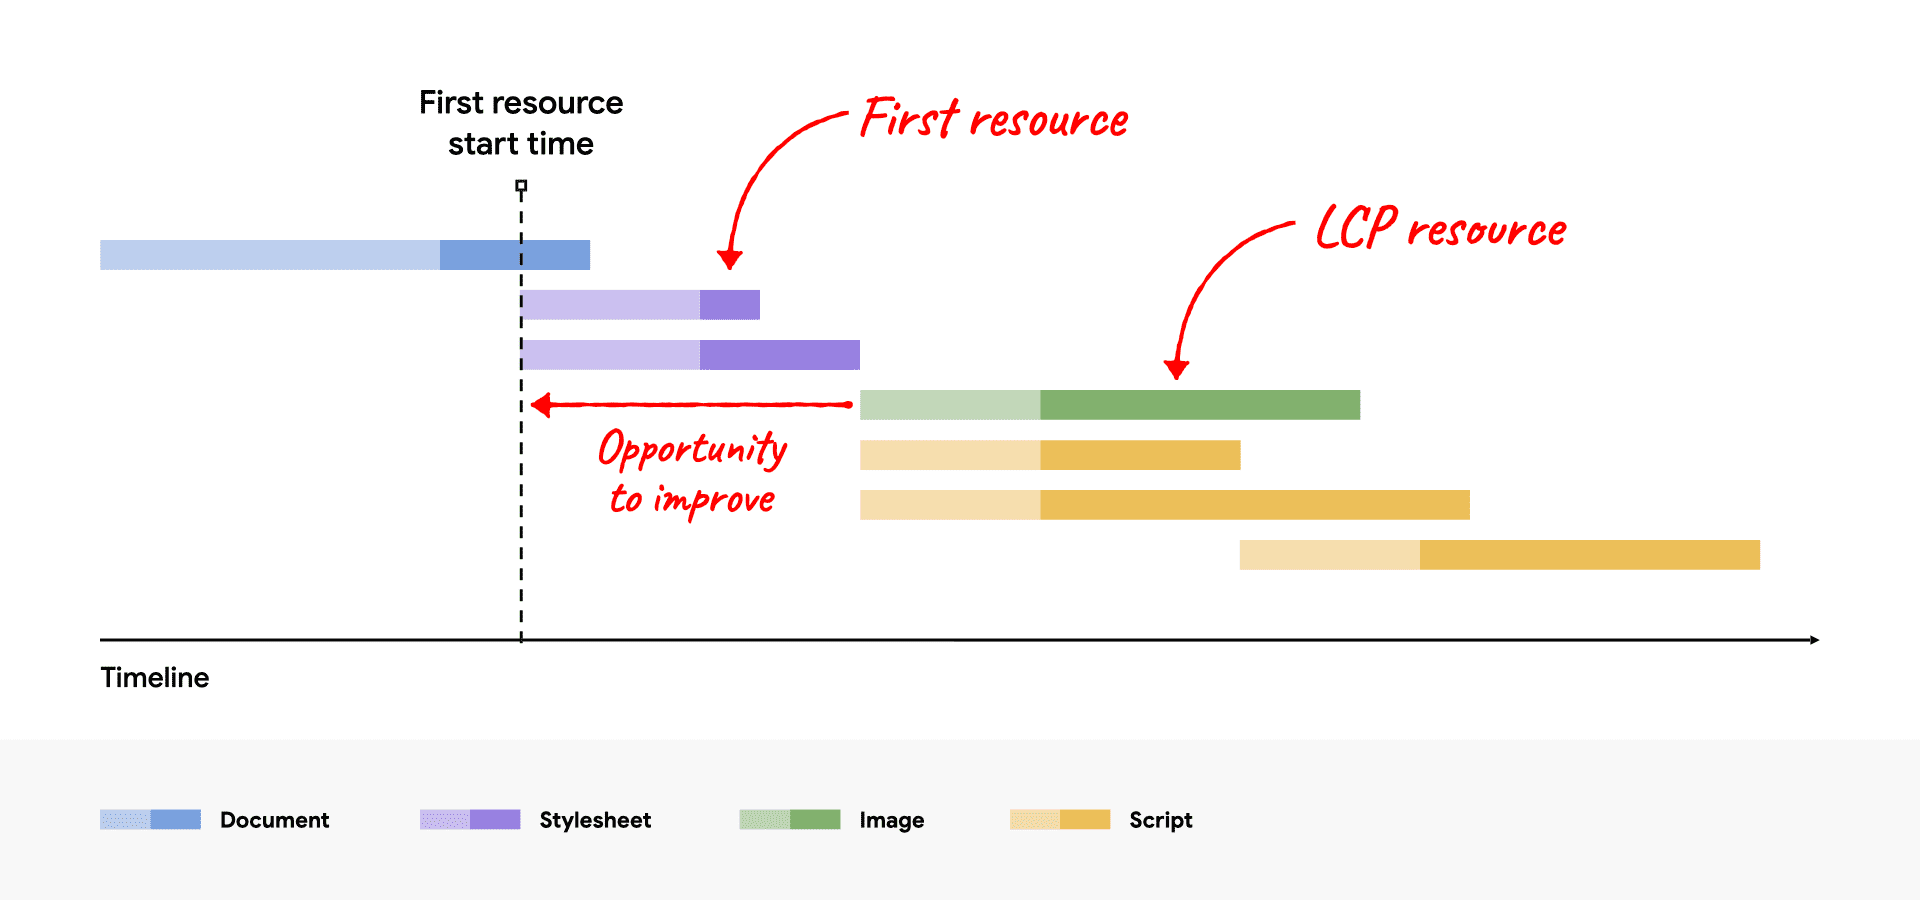 LCP kaynağının ilk kaynaktan sonra başlayan ve iyileştirme fırsatını gösteren ağ şelalesi diyagramı